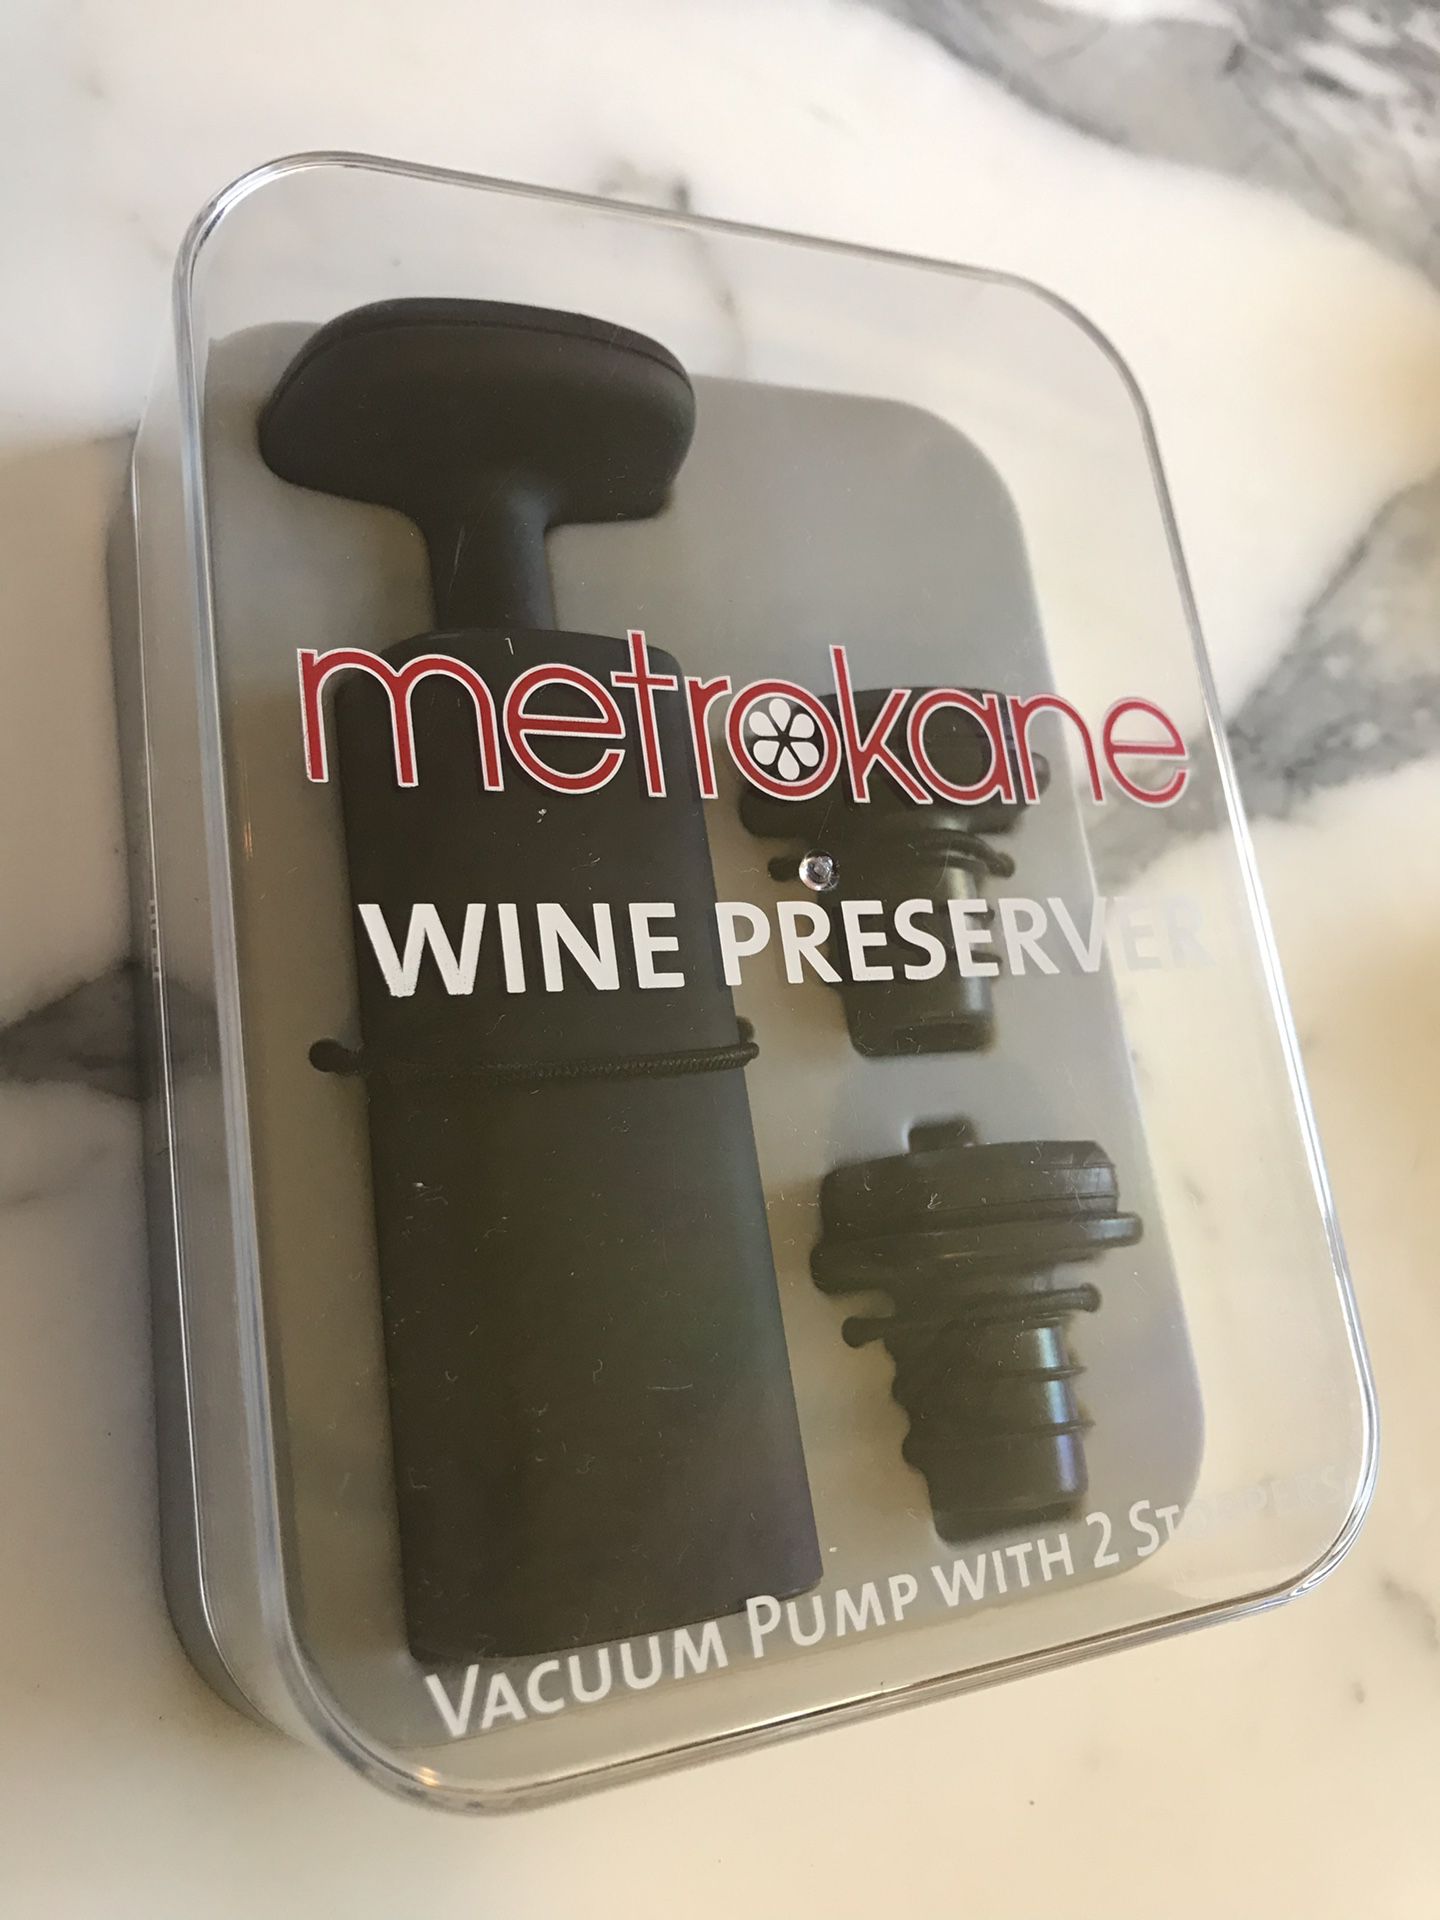 Wine preserver vacuum pump & stopper by MetroKane